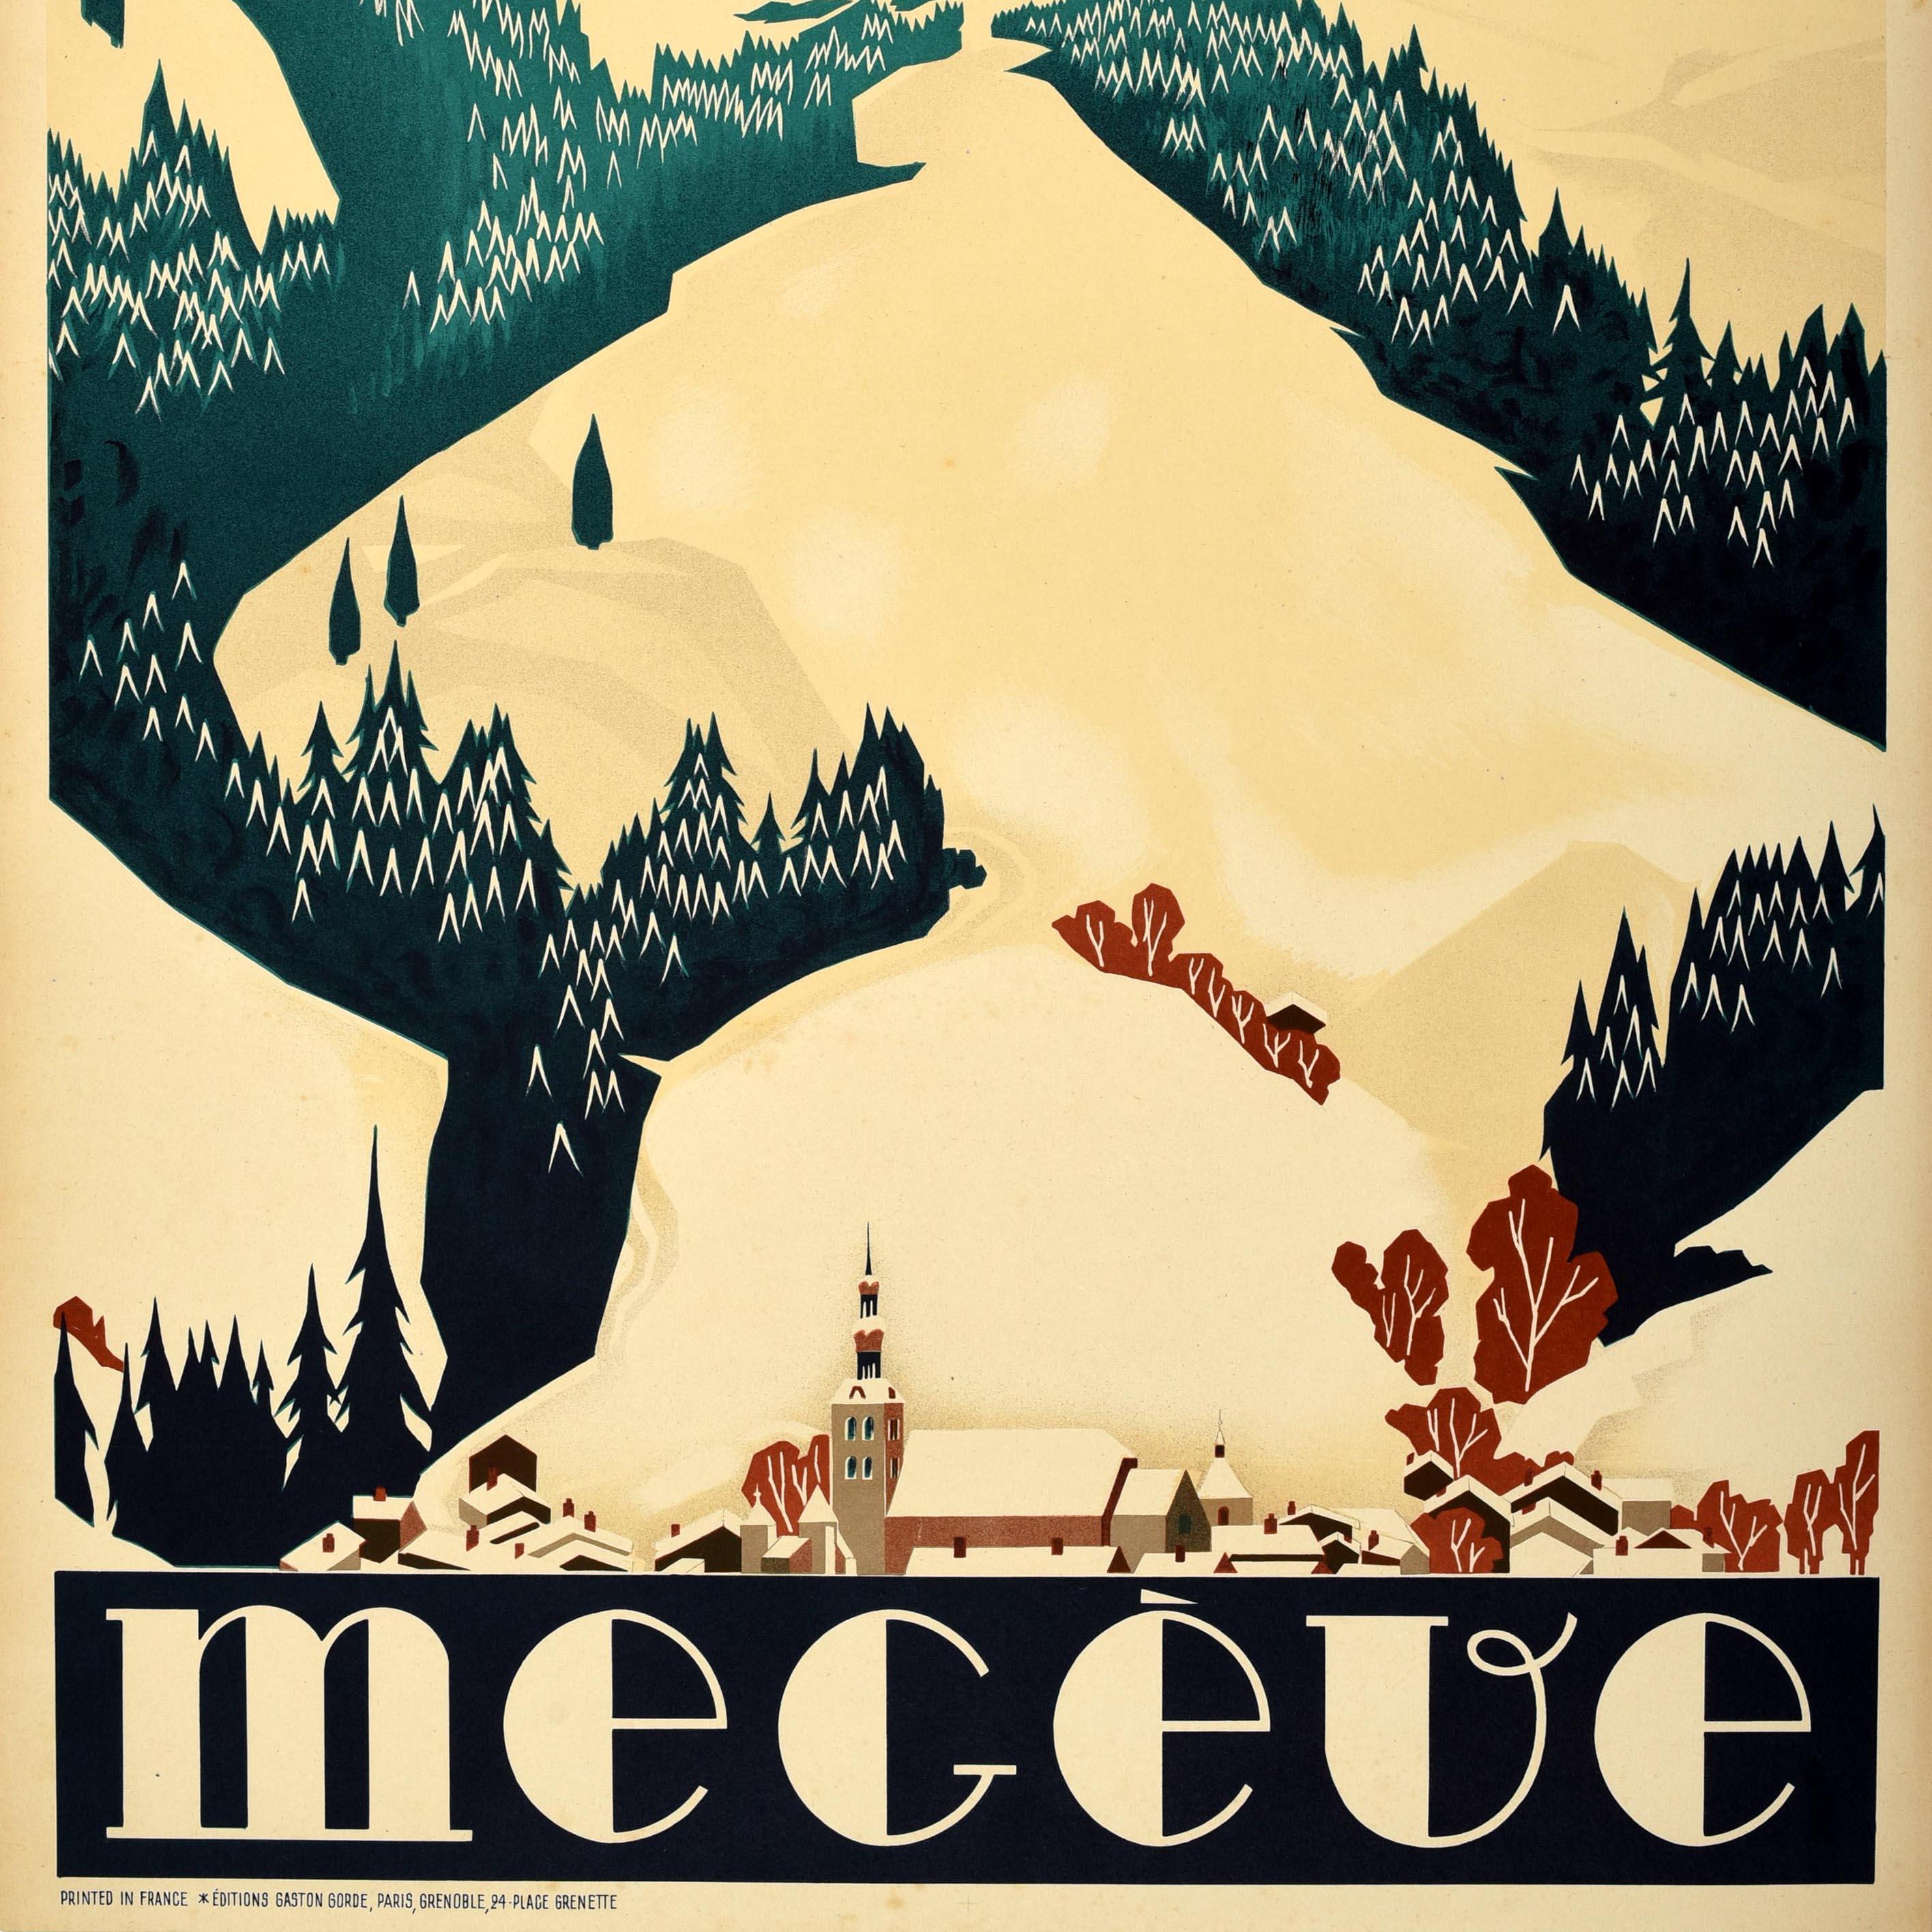 Originales Vintage-Reiseplakat für Megeve, herausgegeben von den staatlichen französischen Eisenbahnen (SNCF Societe Nationale des Chemins de Fer Francais; gegründet 1938), mit einer Ansicht von mit Bäumen gesäumten Skipisten auf schneebedeckten